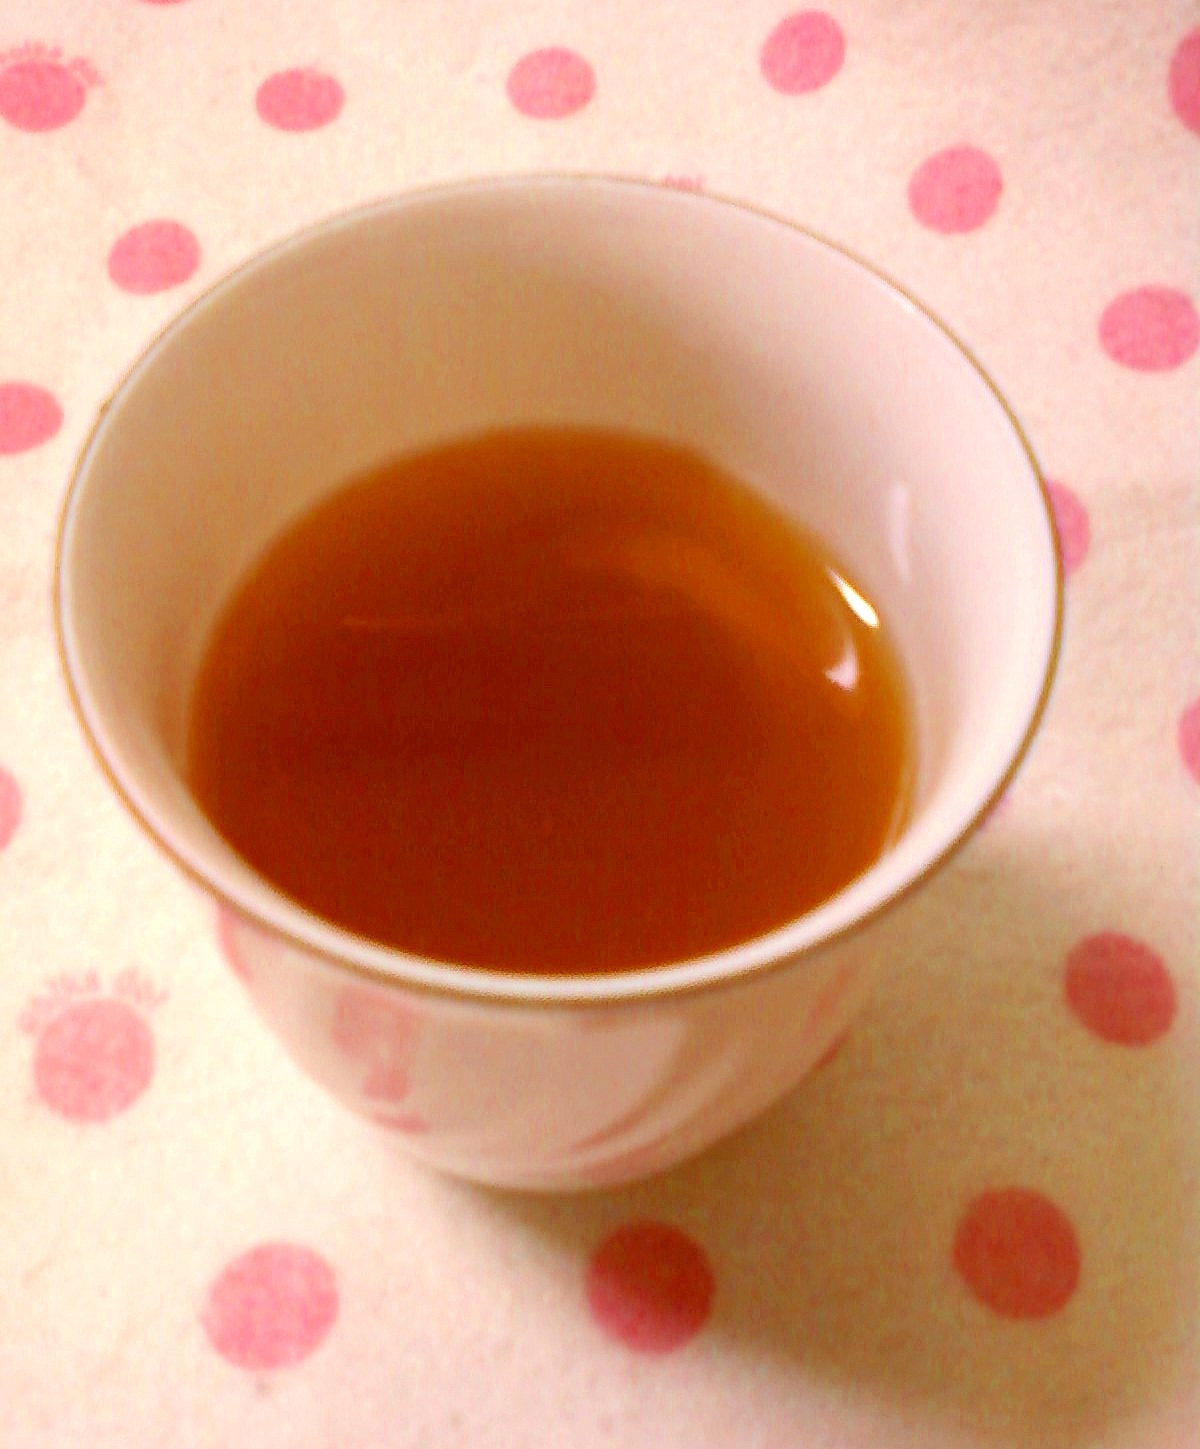 ☆*:・☆蜂蜜漬けレモン入り柚子湯紅茶☆*:・☆